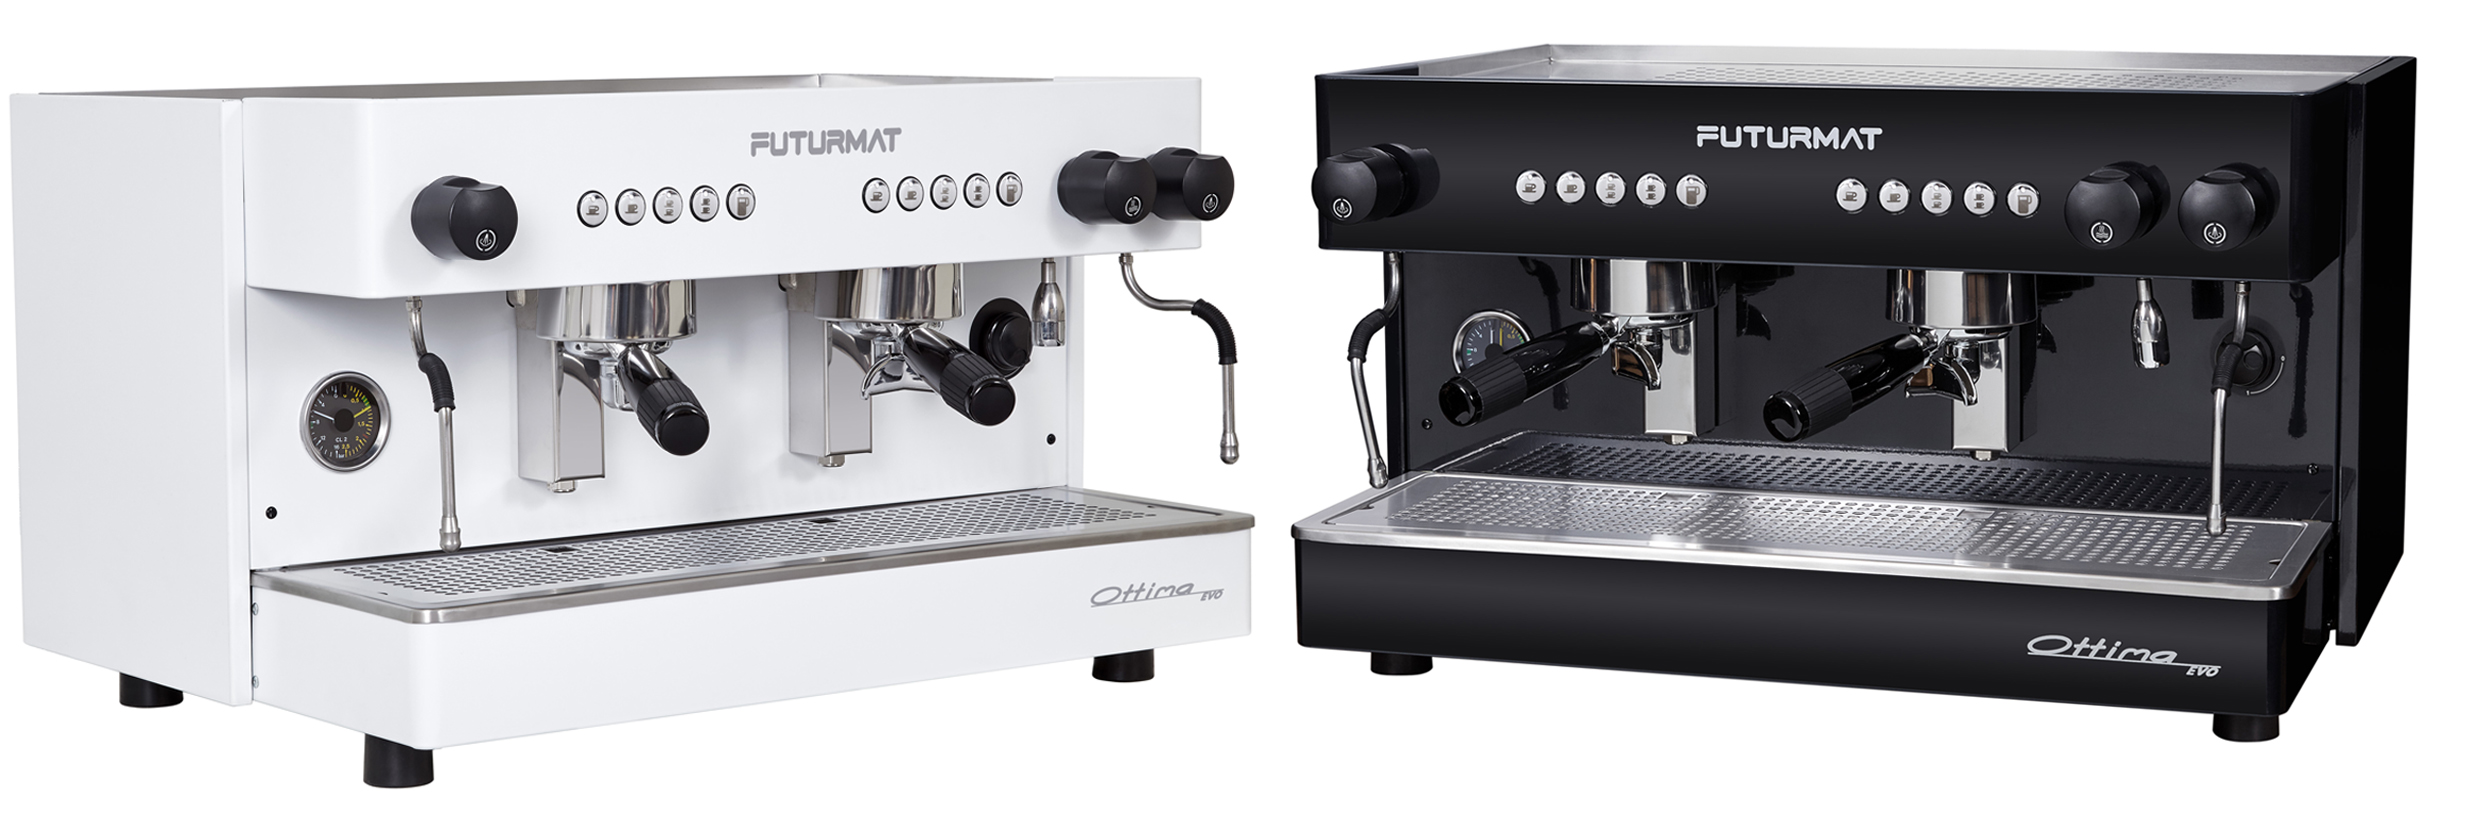 Quality Espresso lanza un nuevo modelo de cafetera profesional